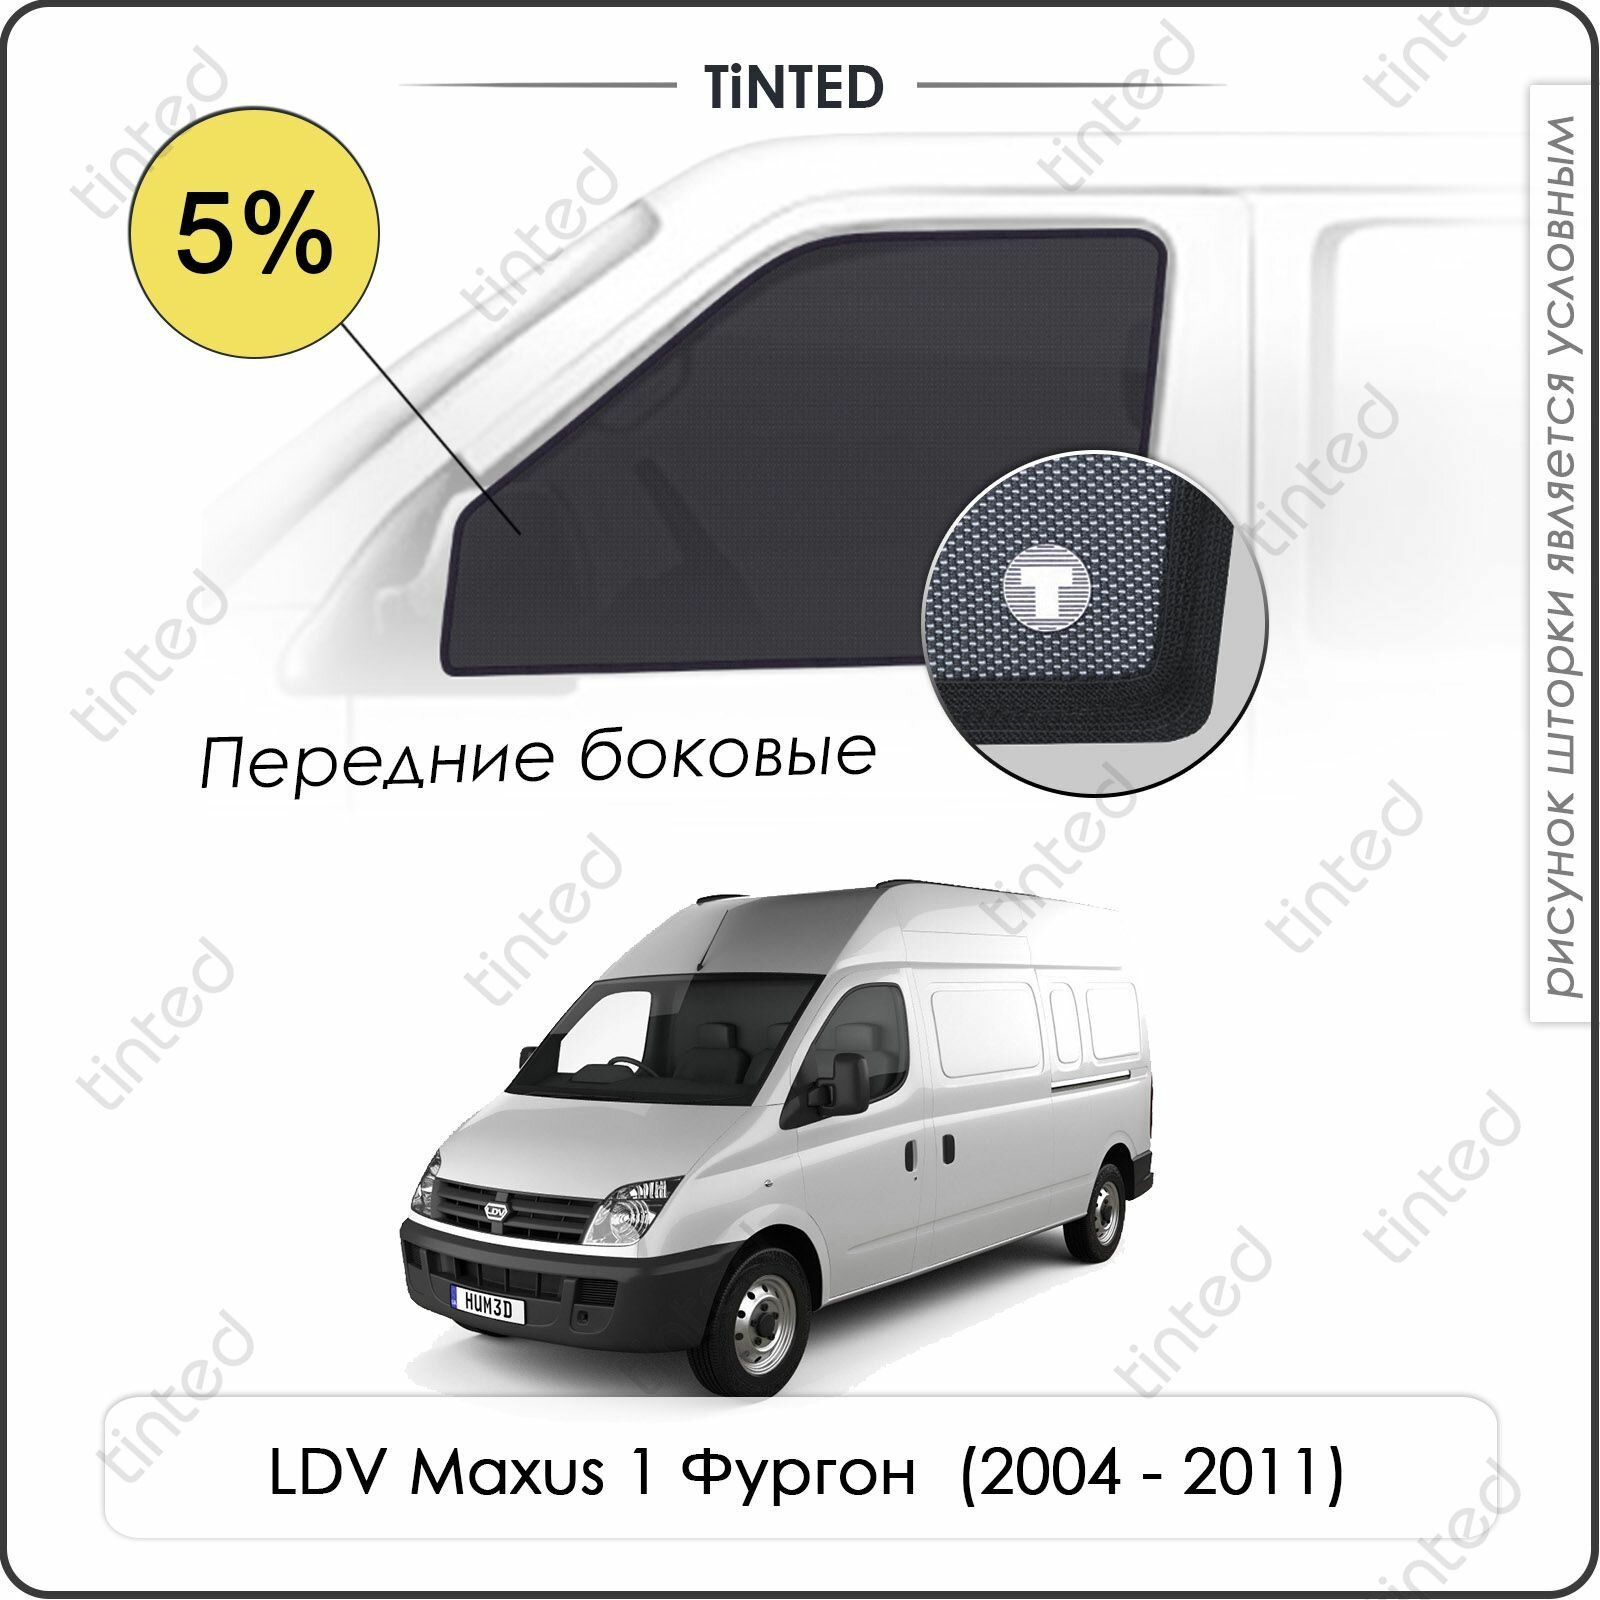 Шторки на автомобиль солнцезащитные LDV Maxus 1 Фургон 2дв. (2004 - 2011) на передние двери 5%, сетки от солнца в машину ЛДВ максус, Каркасные автошторки Premium